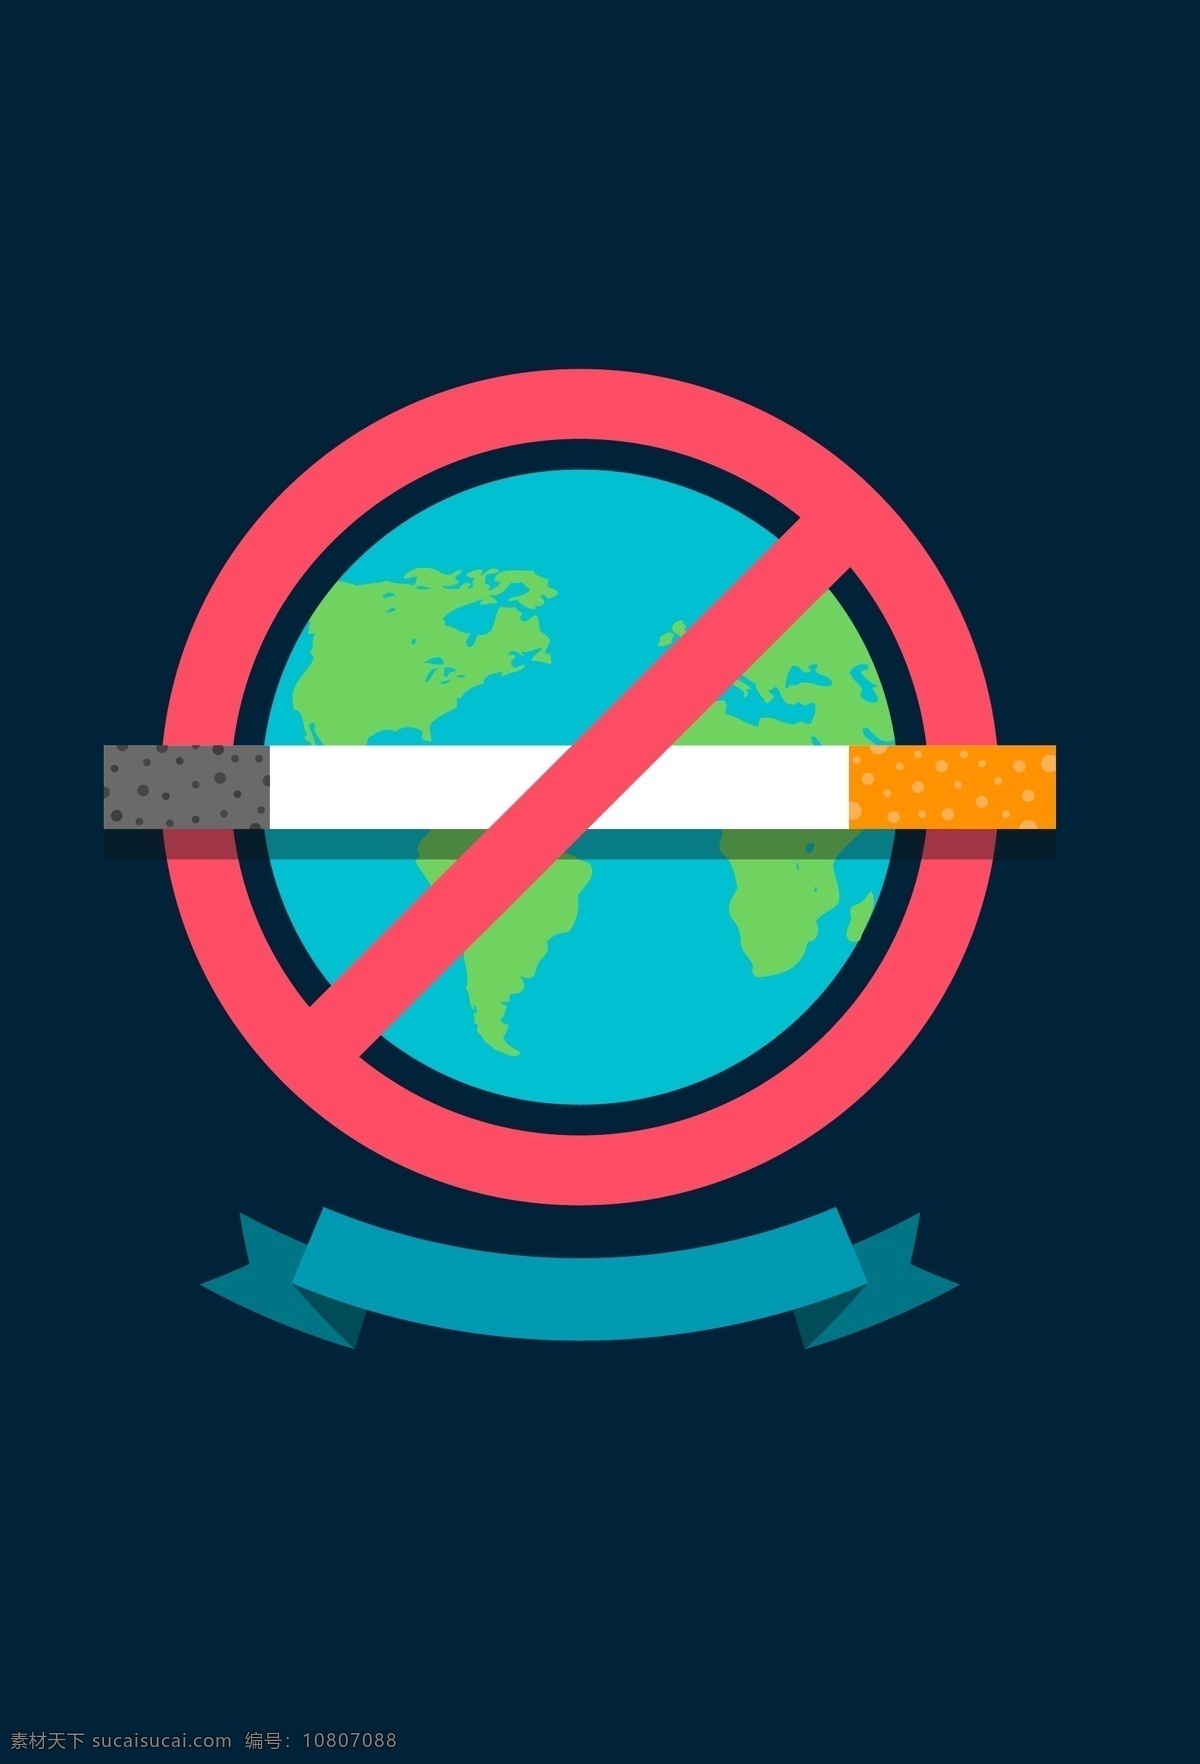 531 简约 世界 无烟日 海报 背景 海报背景 公益 环保 健康 禁烟日 香烟 禁止 地球